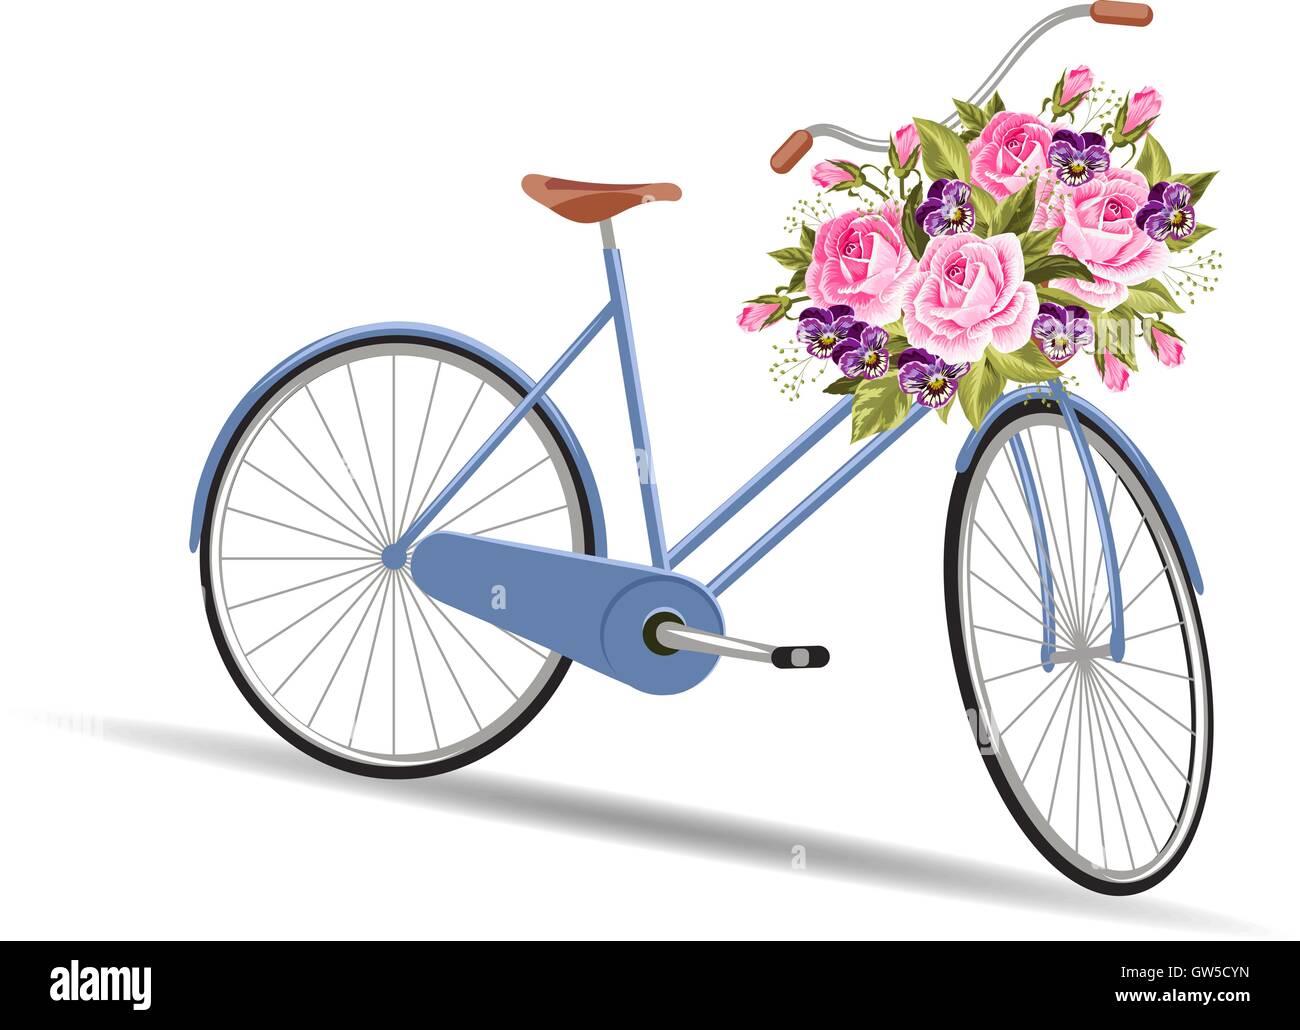 Vélo bleu avec un panier plein de fleurs Image Vectorielle Stock - Alamy